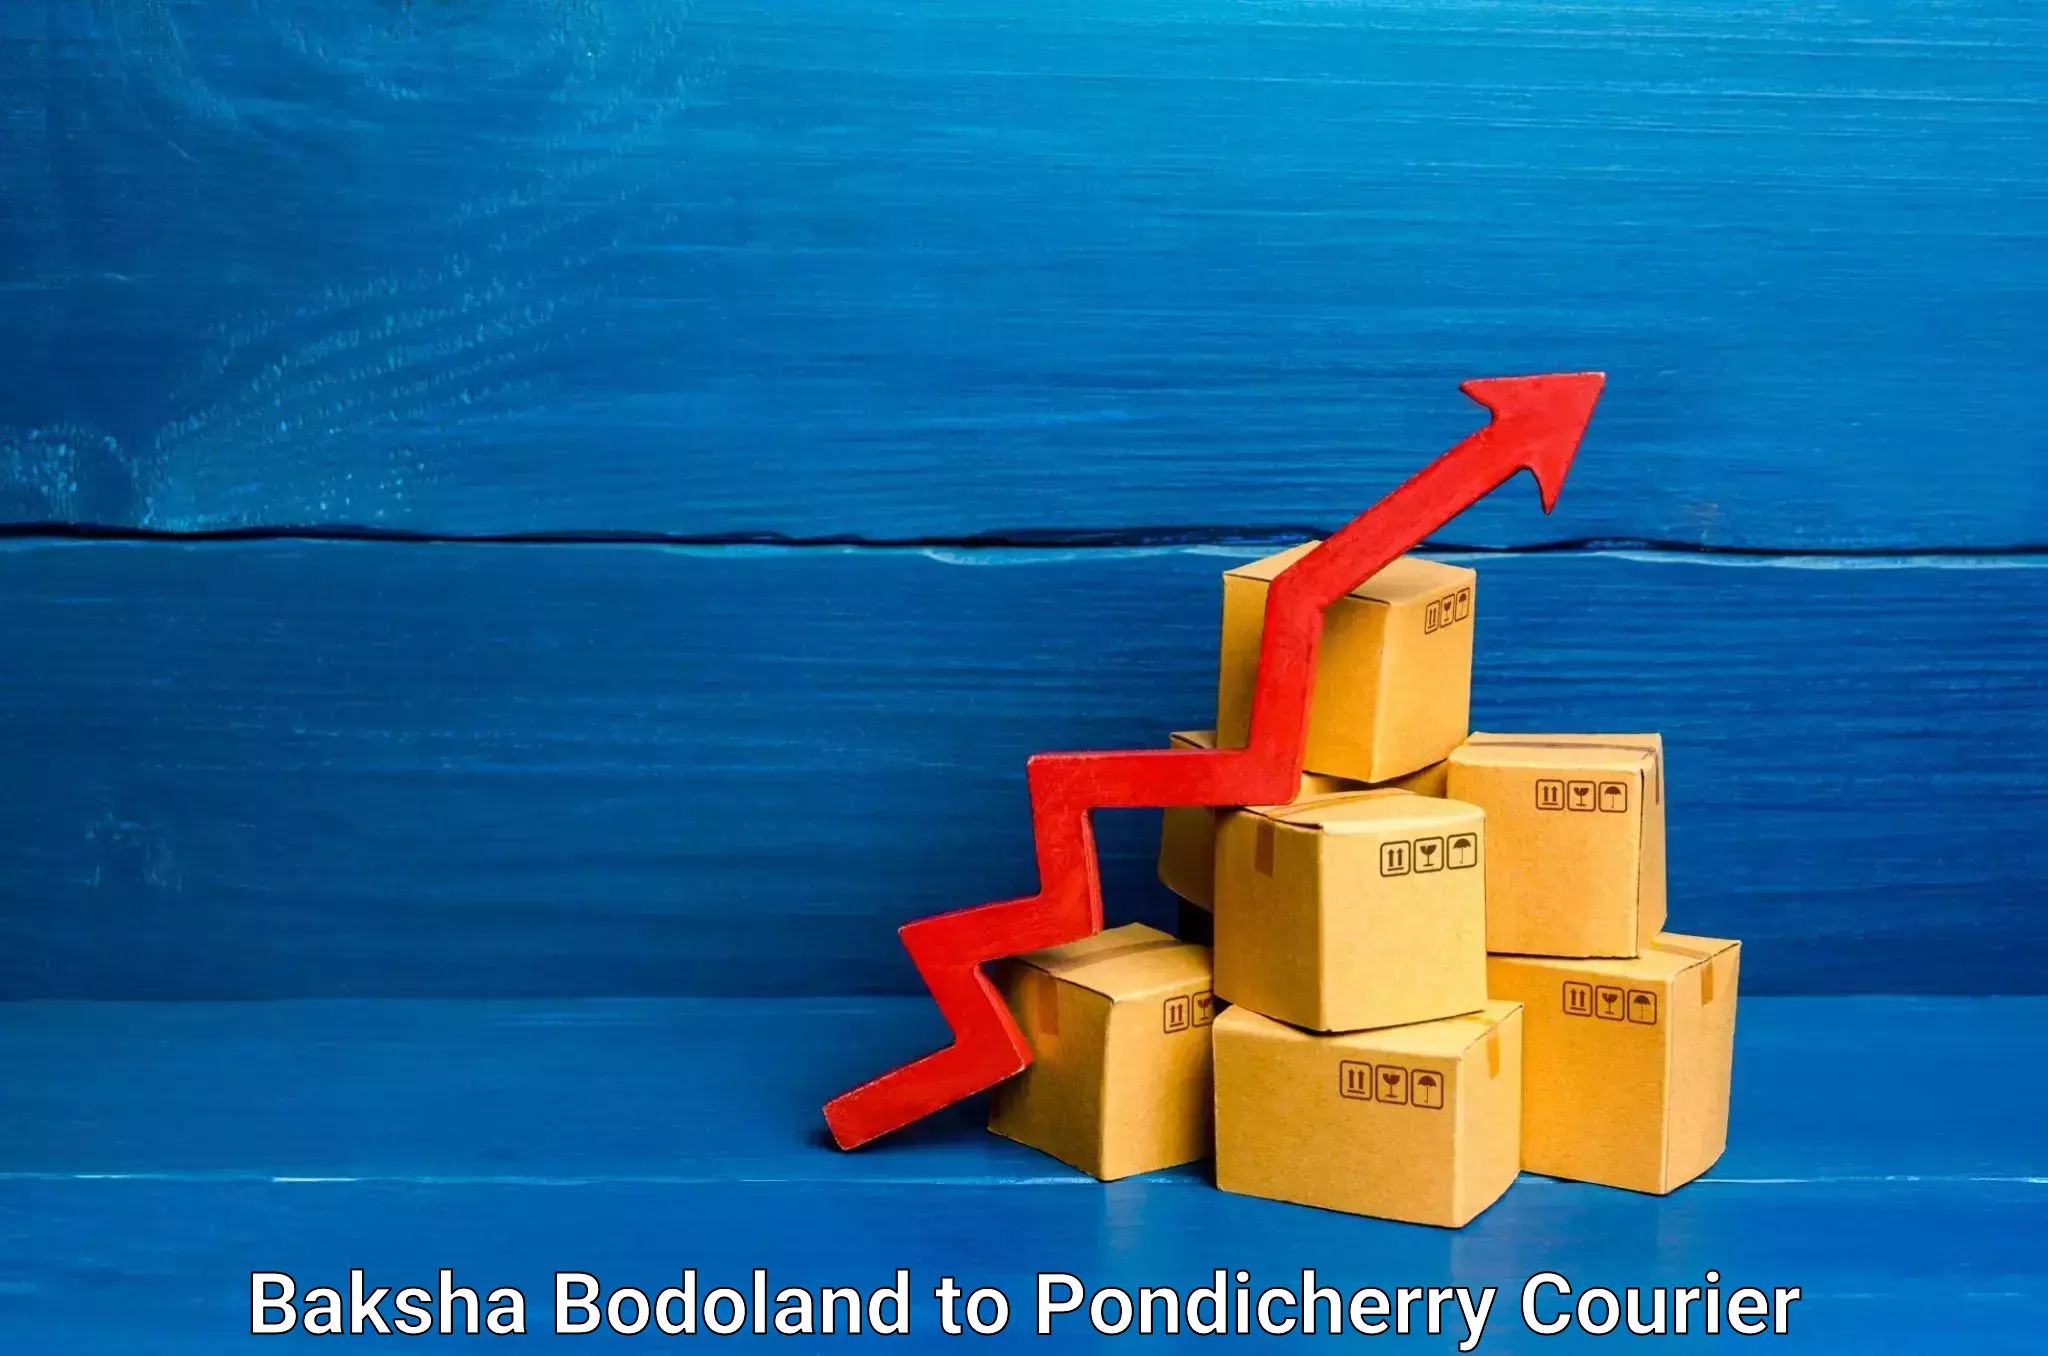 Fast-track shipping solutions Baksha Bodoland to Pondicherry University